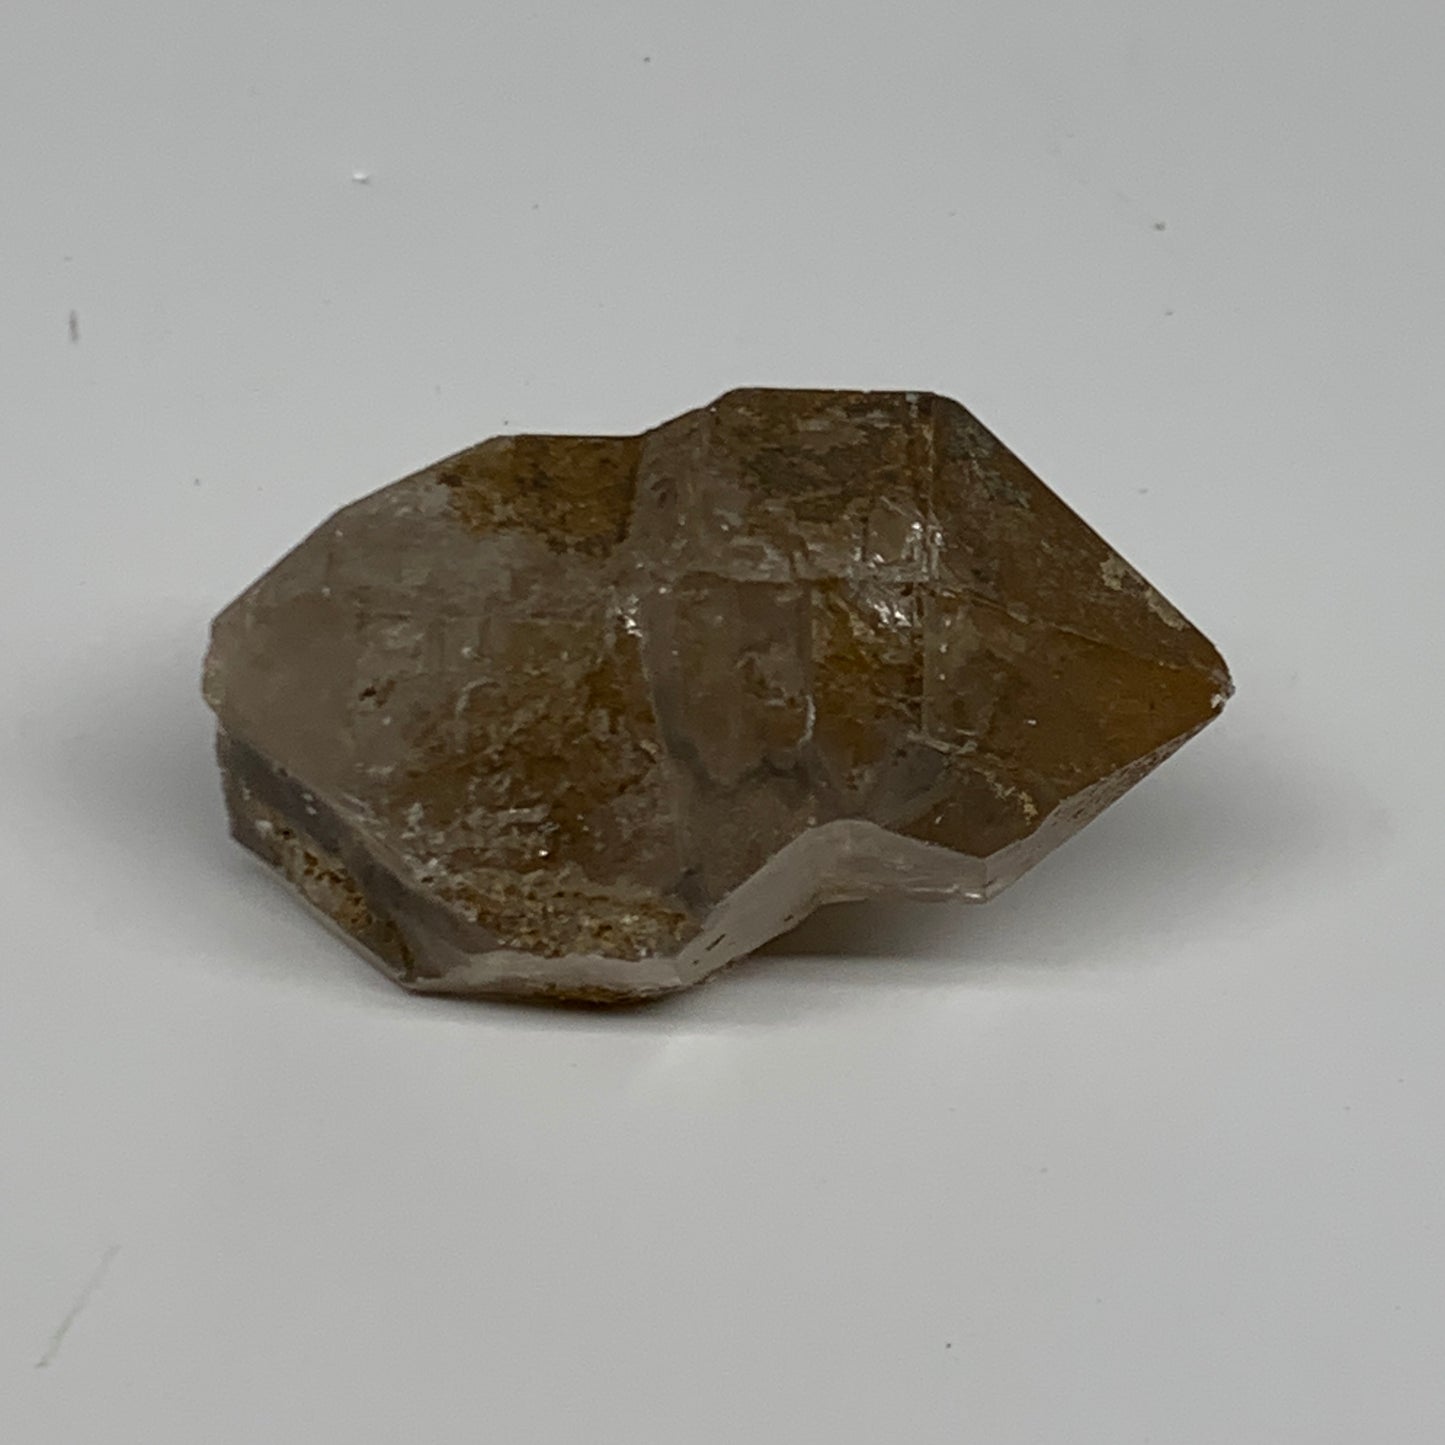 69.2g,  2.3"x1.3"x1.2", Natural Window Quartz Crystal Terminated @Pakistan,B2776